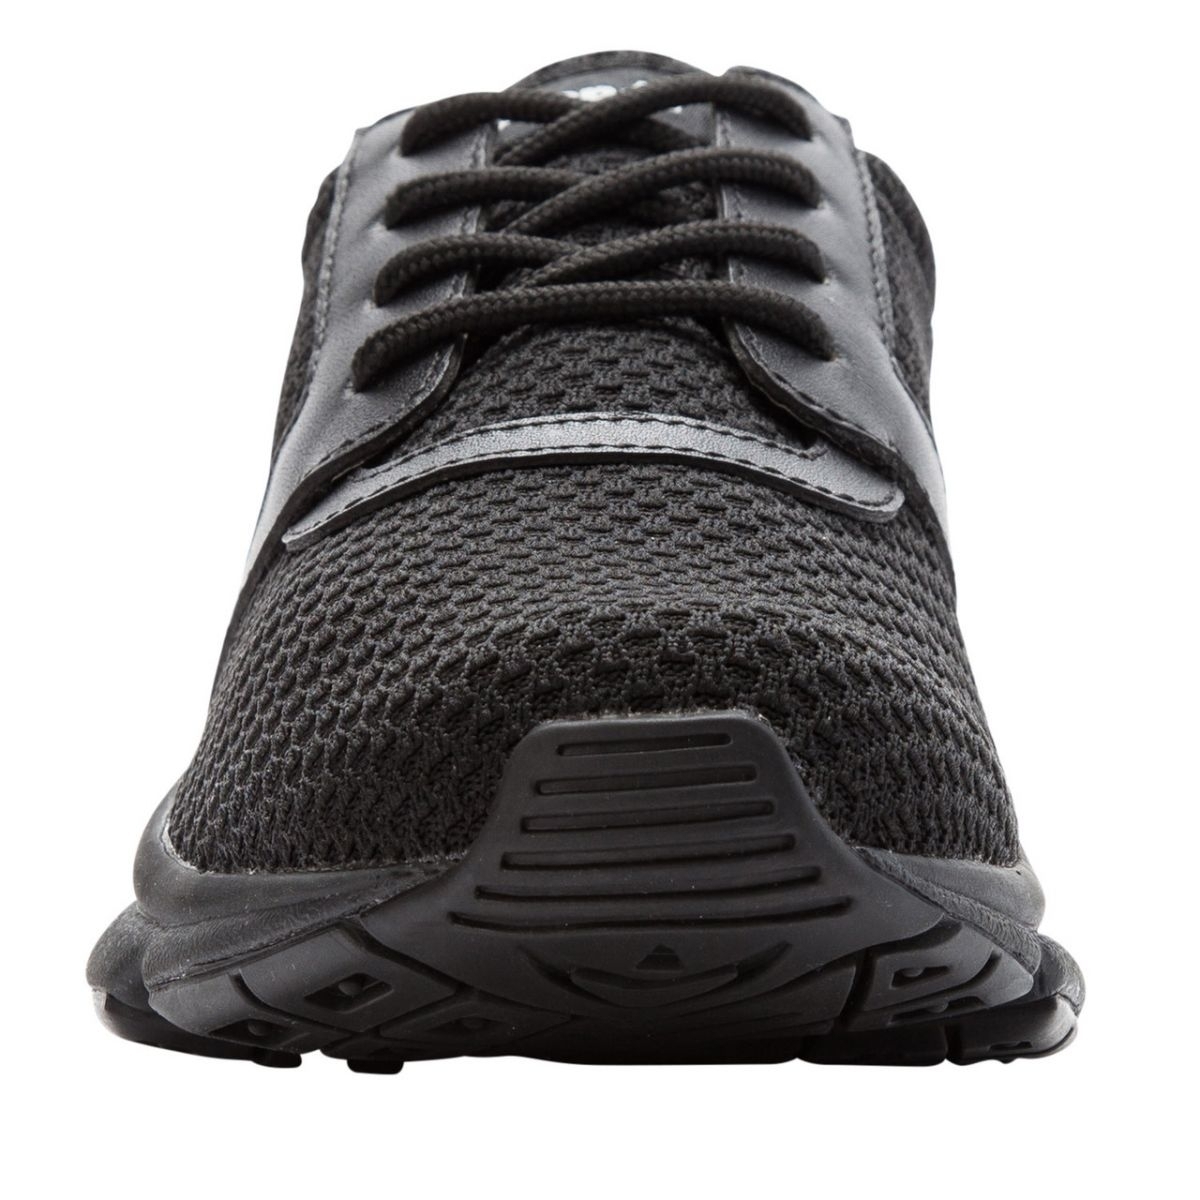 Propet Women's Stability X Walking Shoe Black - WAA032MBLK BLACK - BLACK, 5.5